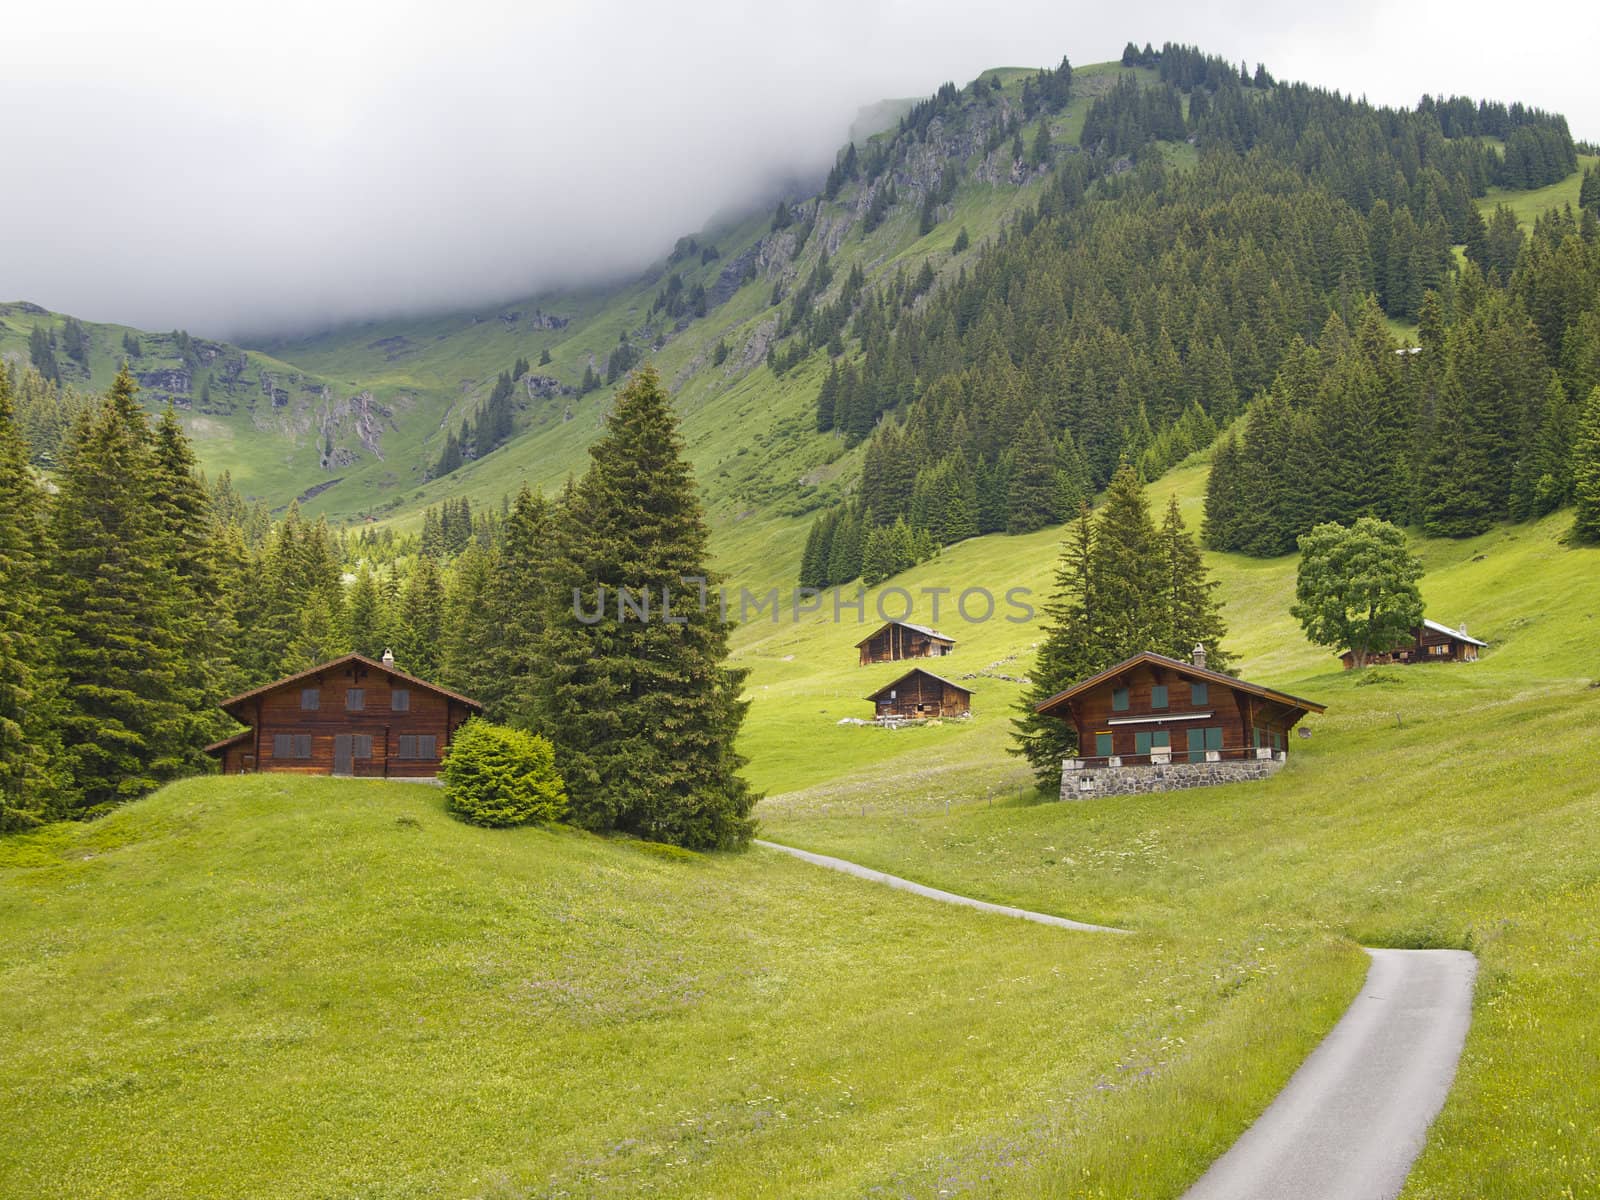 Swiis chalet in the valley of Switzerland by mrpeak